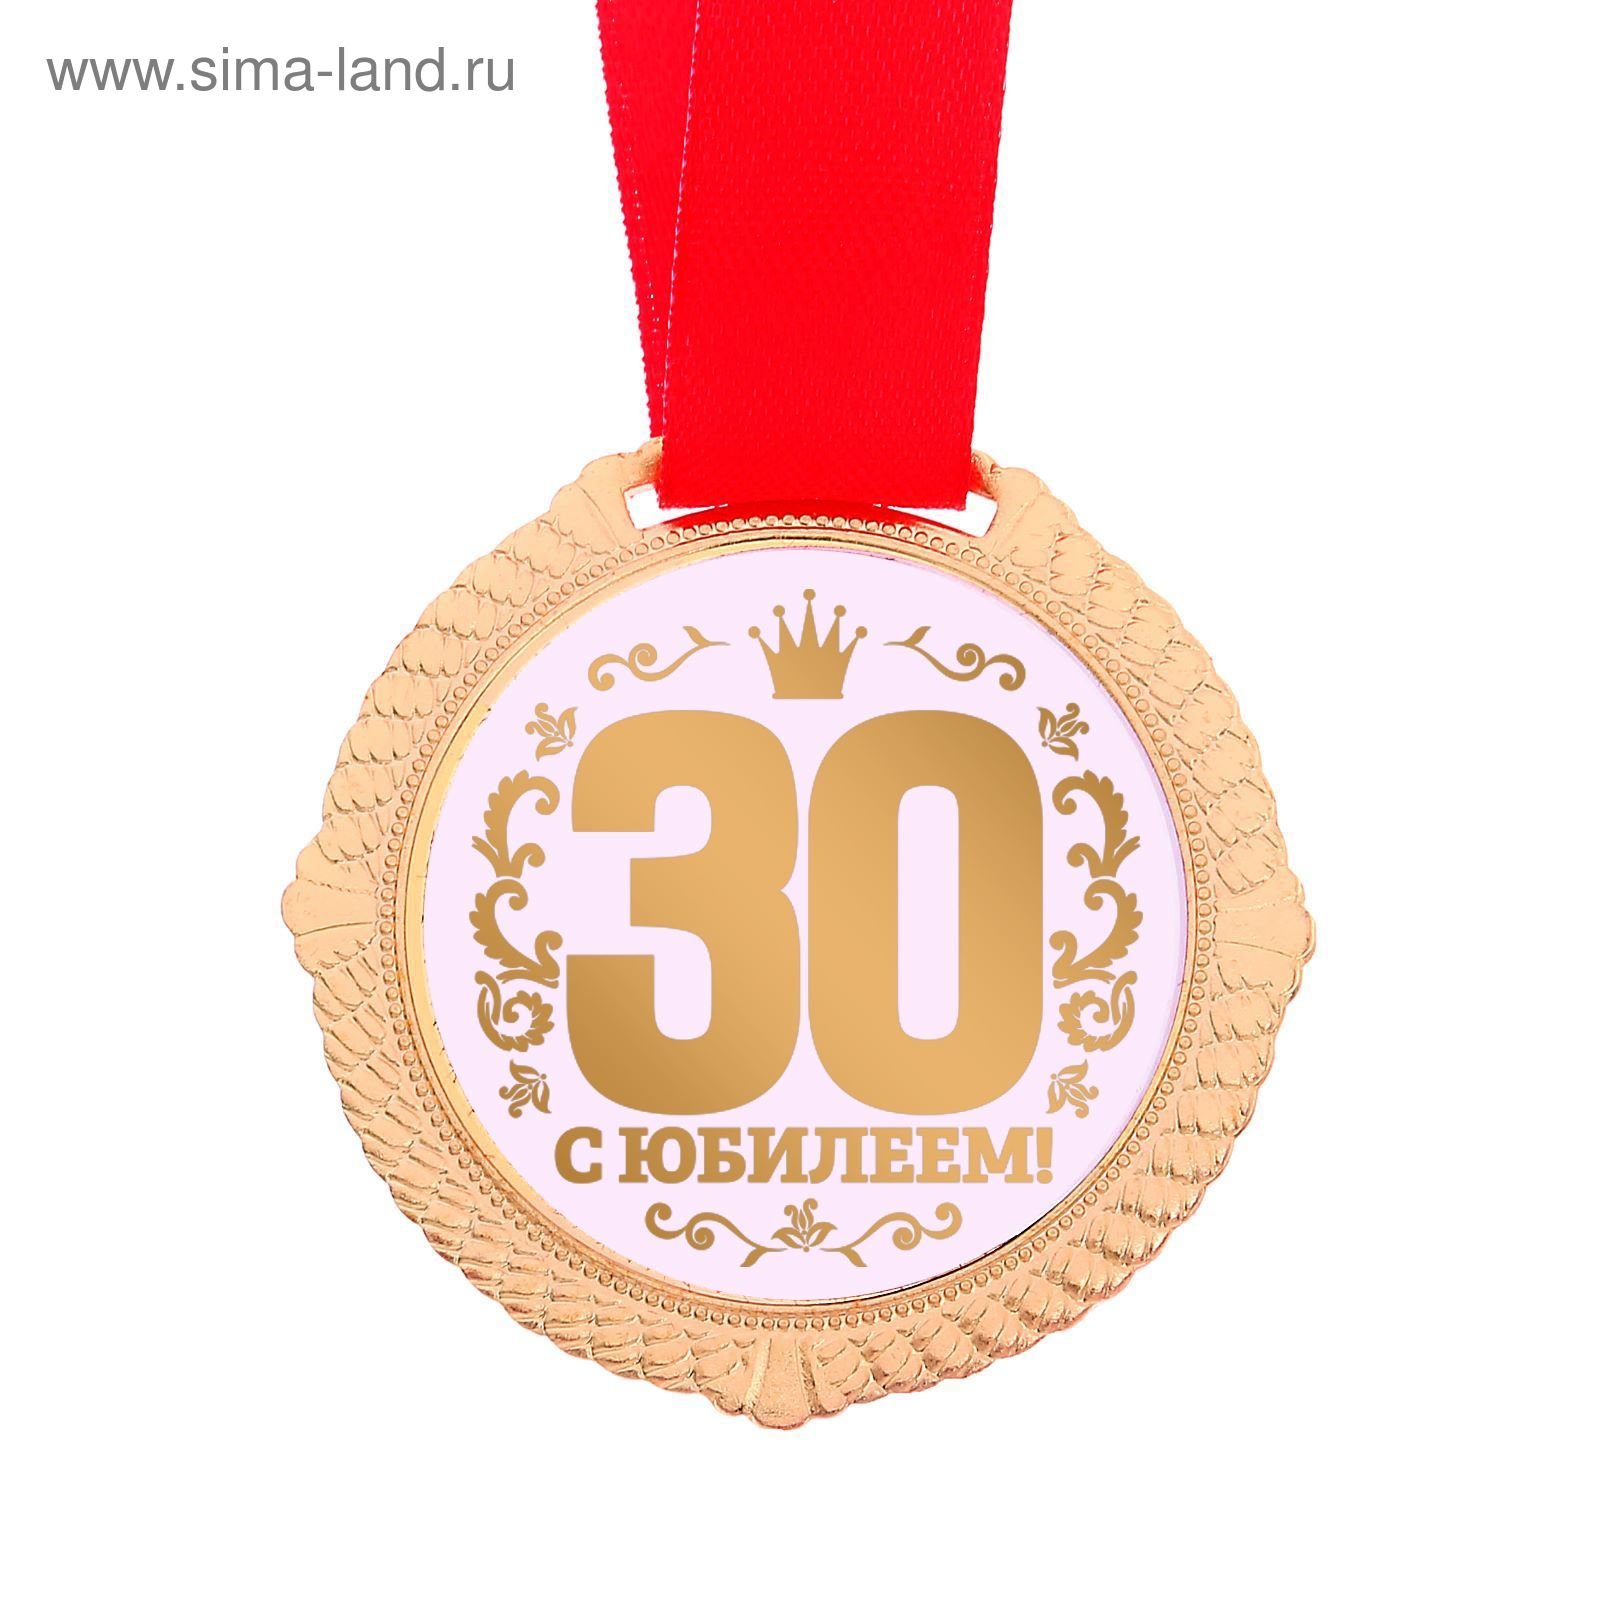 Поздравления с юбилеем 30 летия. Медаль 30 лет. С днём рождения 30 лет. Медаль 35 лет юбилей. Медаль 80 лет.